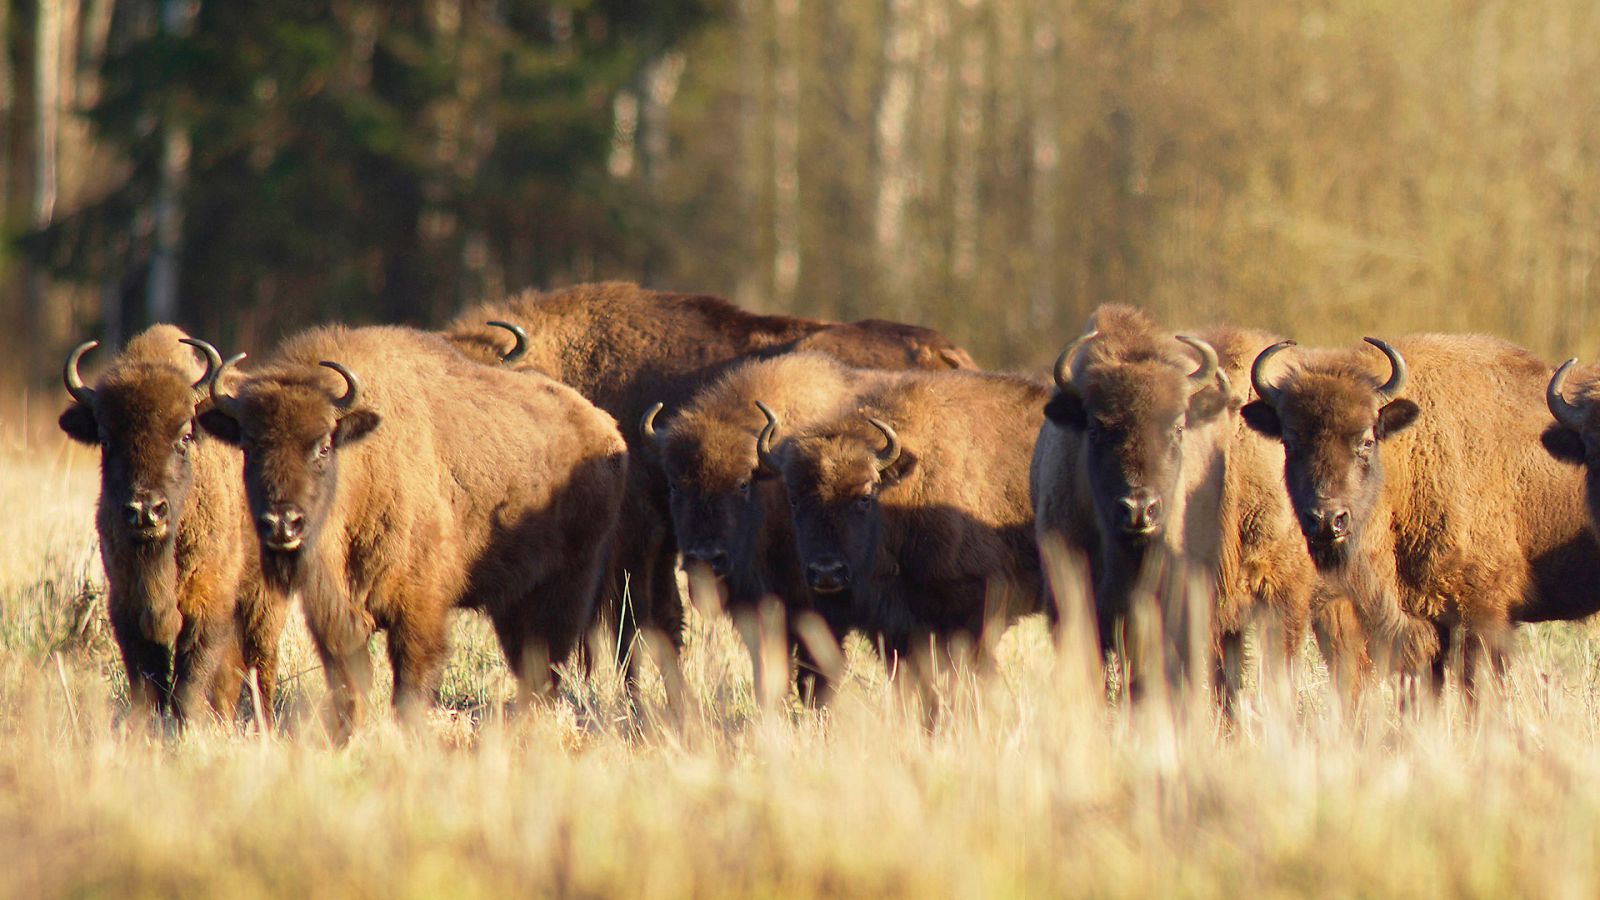 Somos documentales - La madre de todos los bisontes - Documental en RTVE